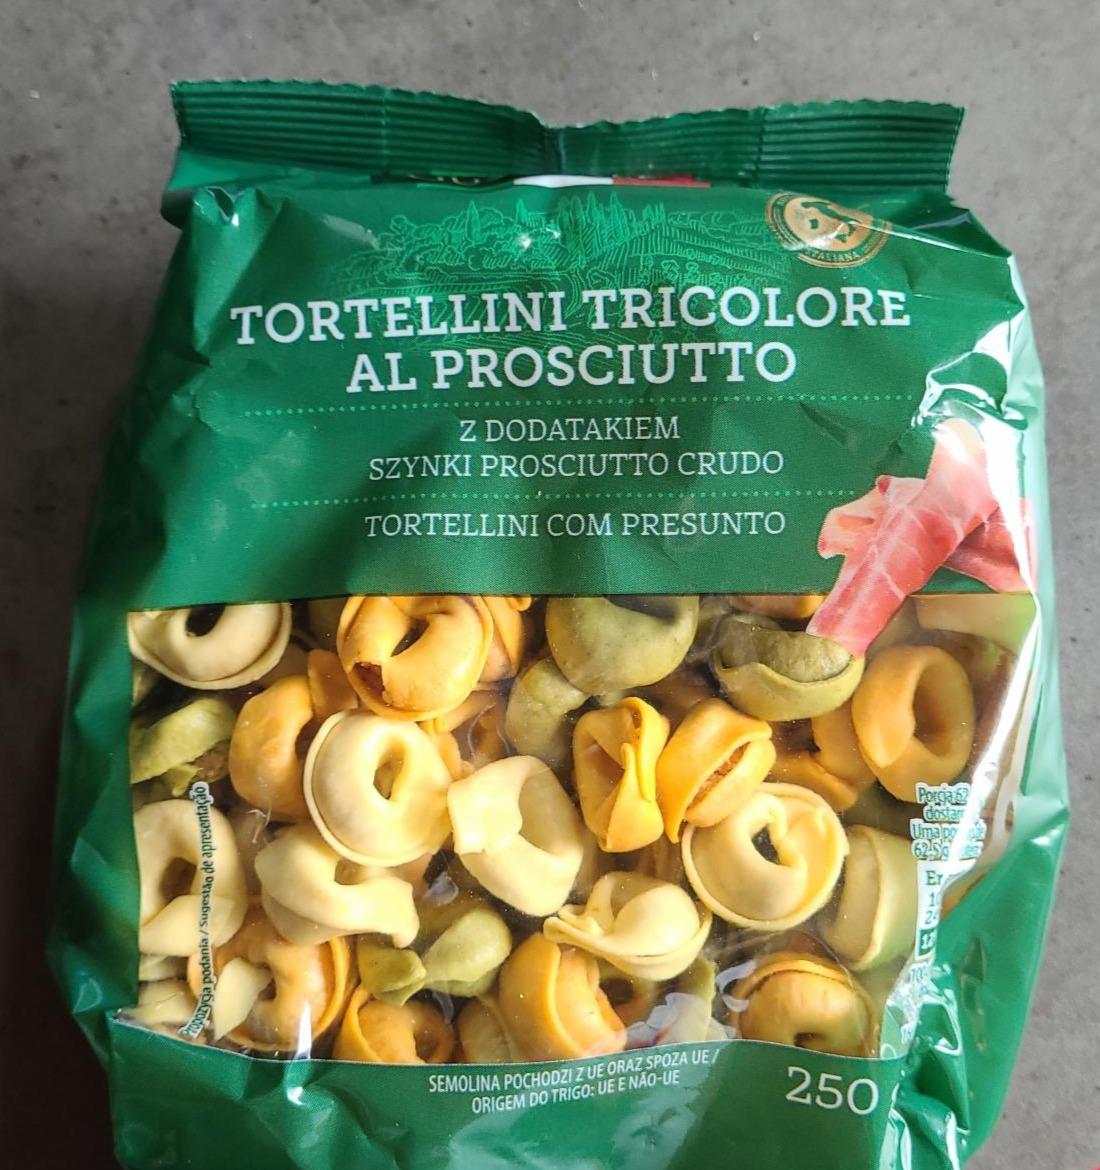 Zdjęcia - Tortellini Tricolore Al Prosciutto GustoBello